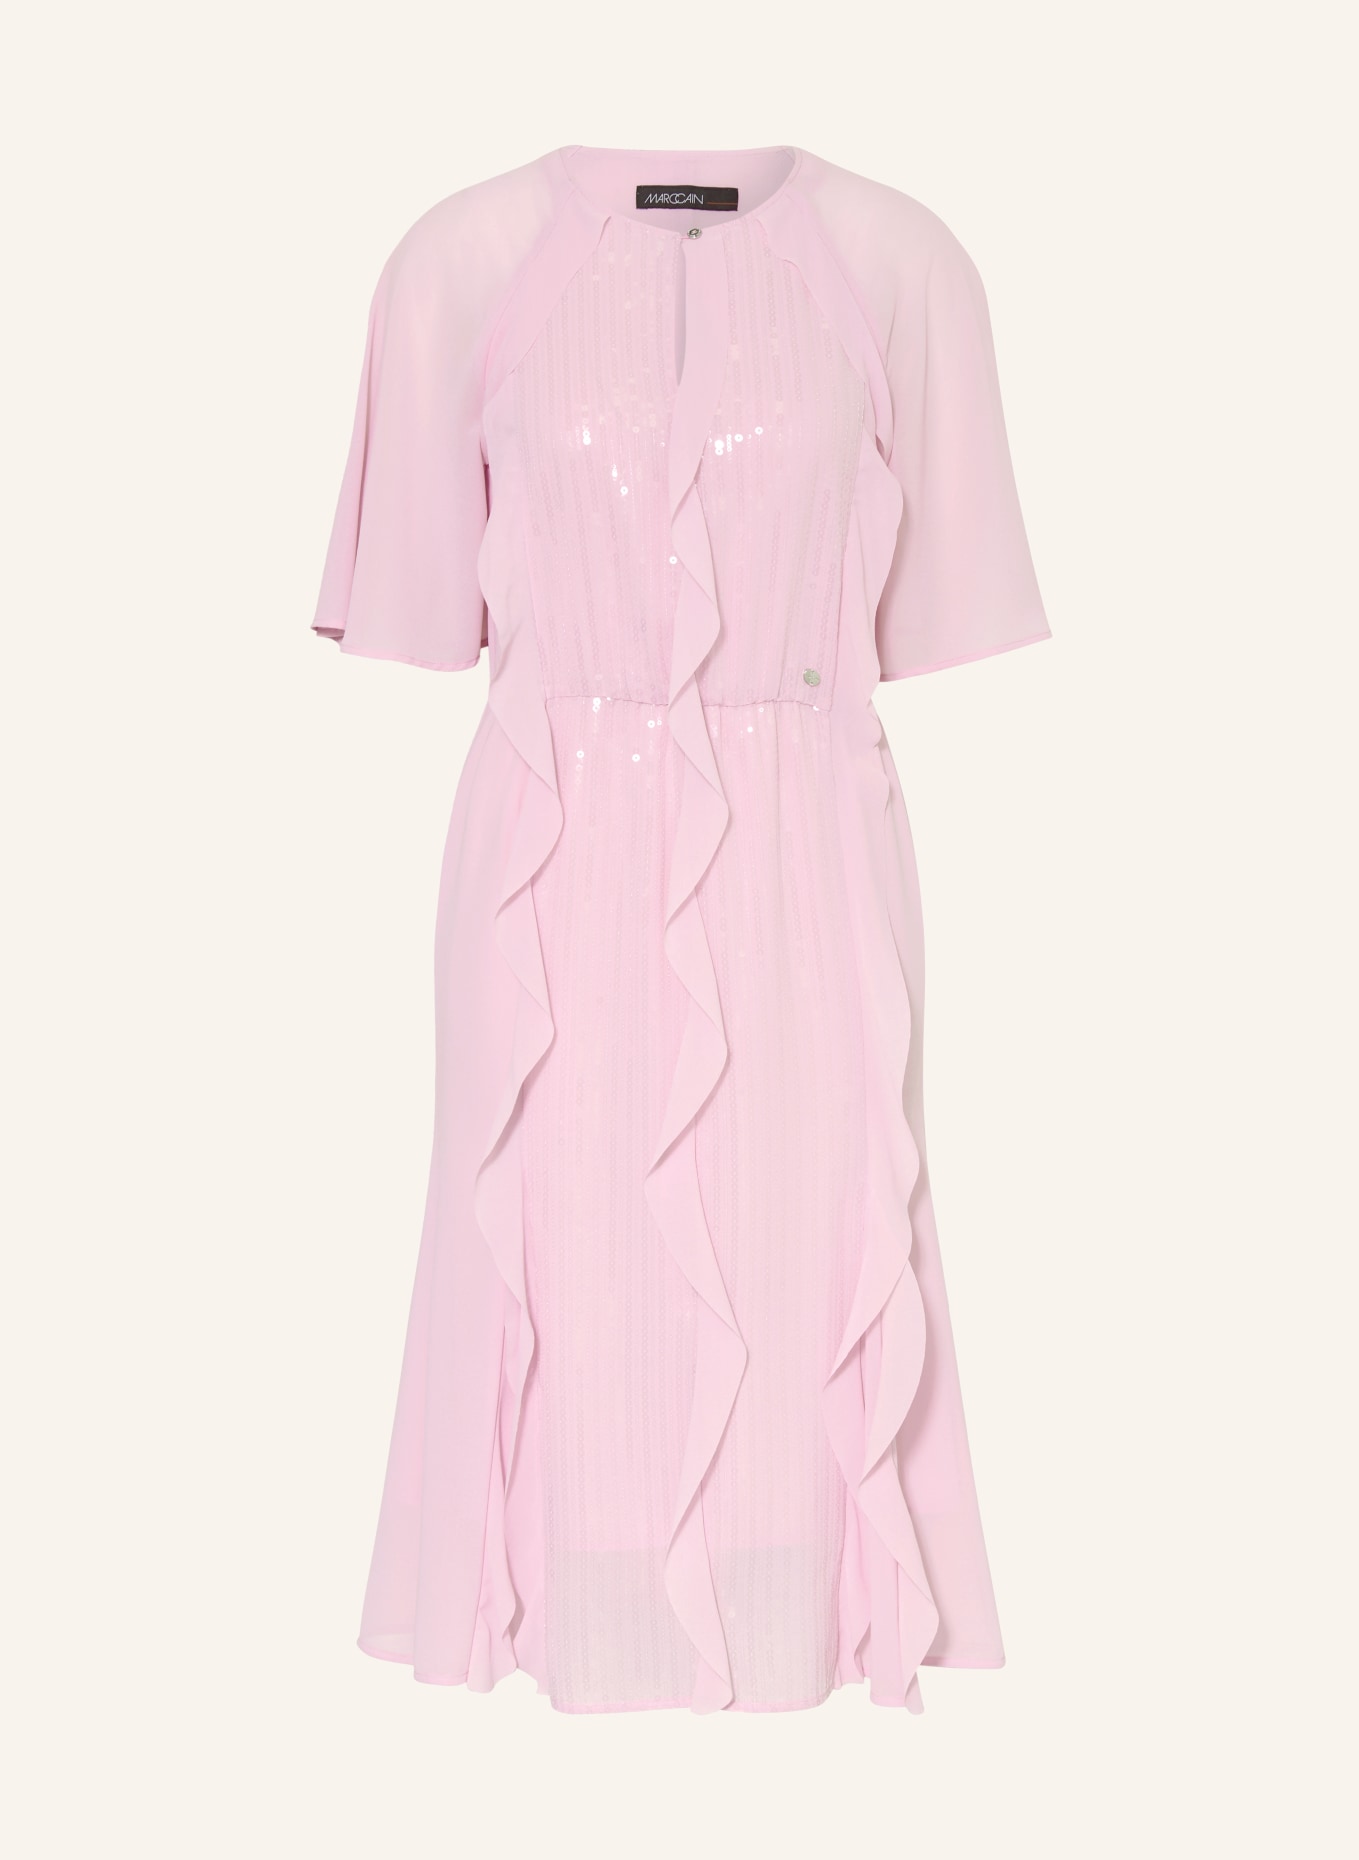 MARC CAIN Kleid mit Pailletten und Volants, Farbe: 709 pink lavender (Bild 1)